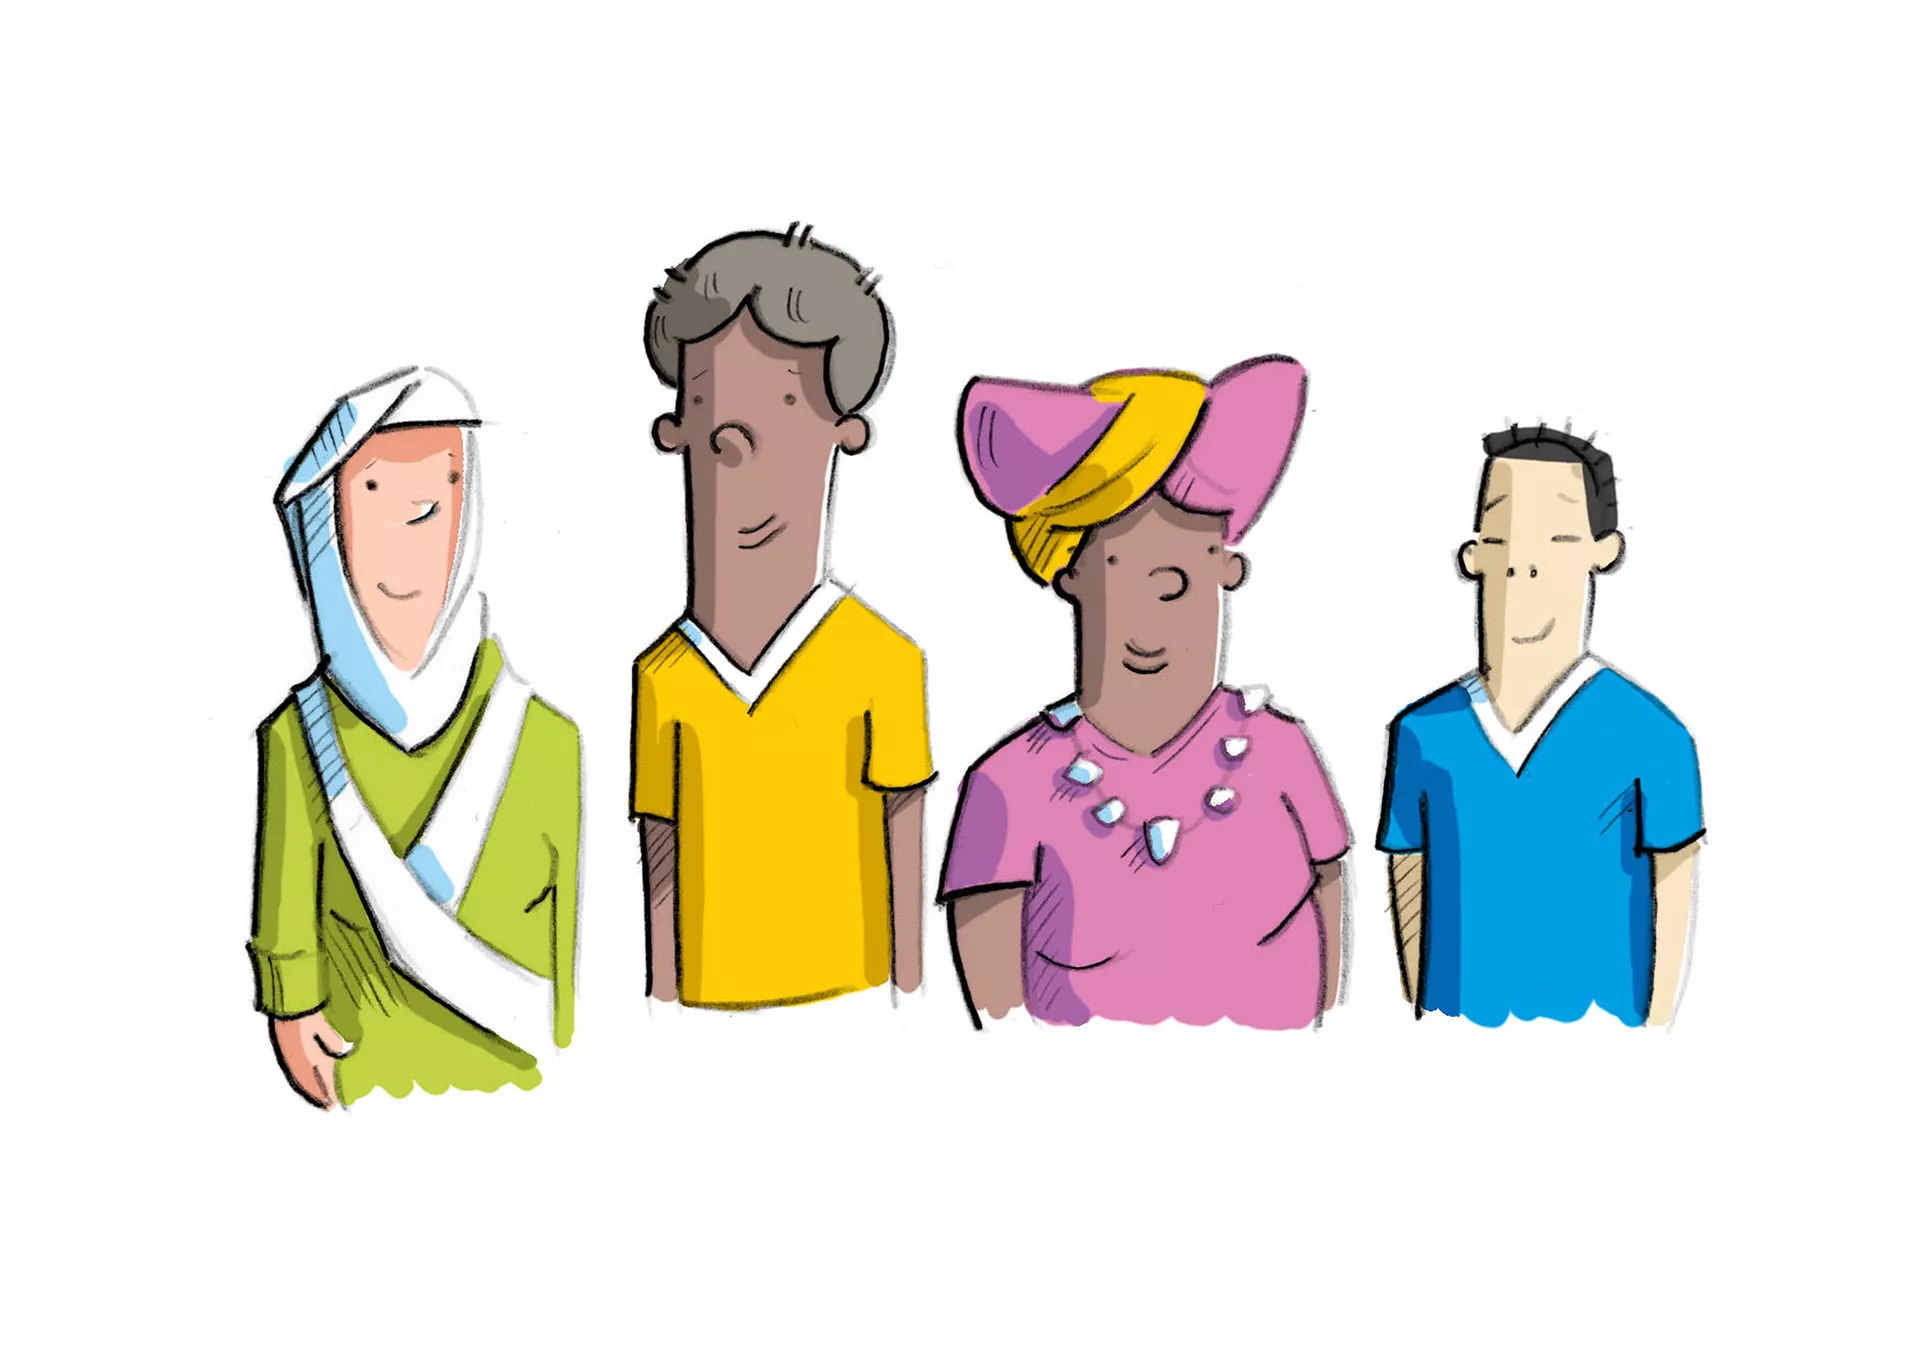 Bild: Vier unterschiedliche Menschen mit verschiedenen Hautfarben und unterschiedlich gekleidet